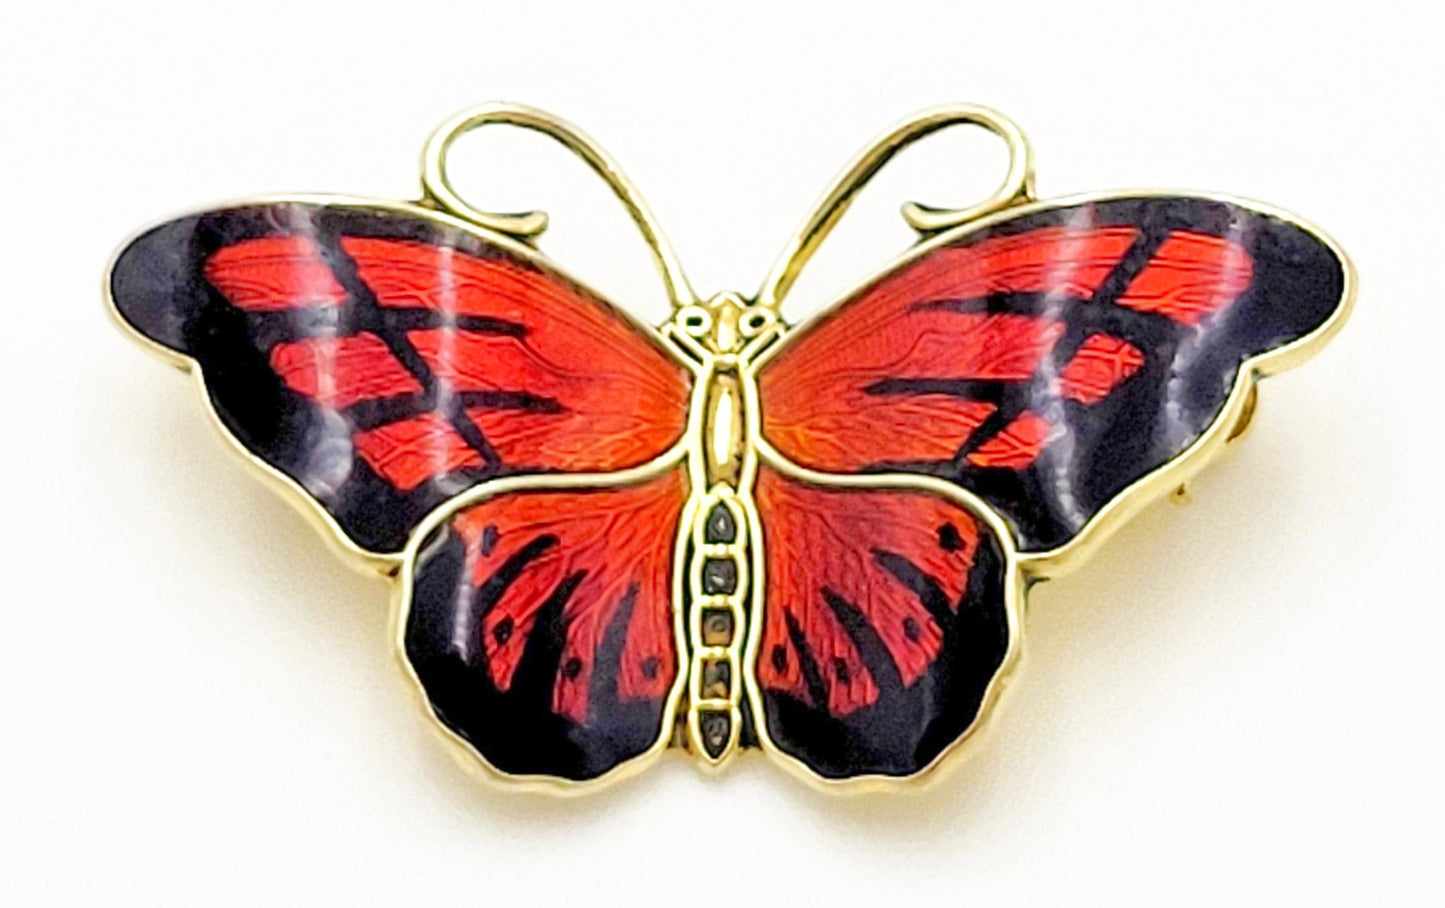 Hroar Prydz Jewelry Norwegian Jens Erik Jensen for Hroar Prydz Sterling Enamel Butterfly Brooch 20/30s